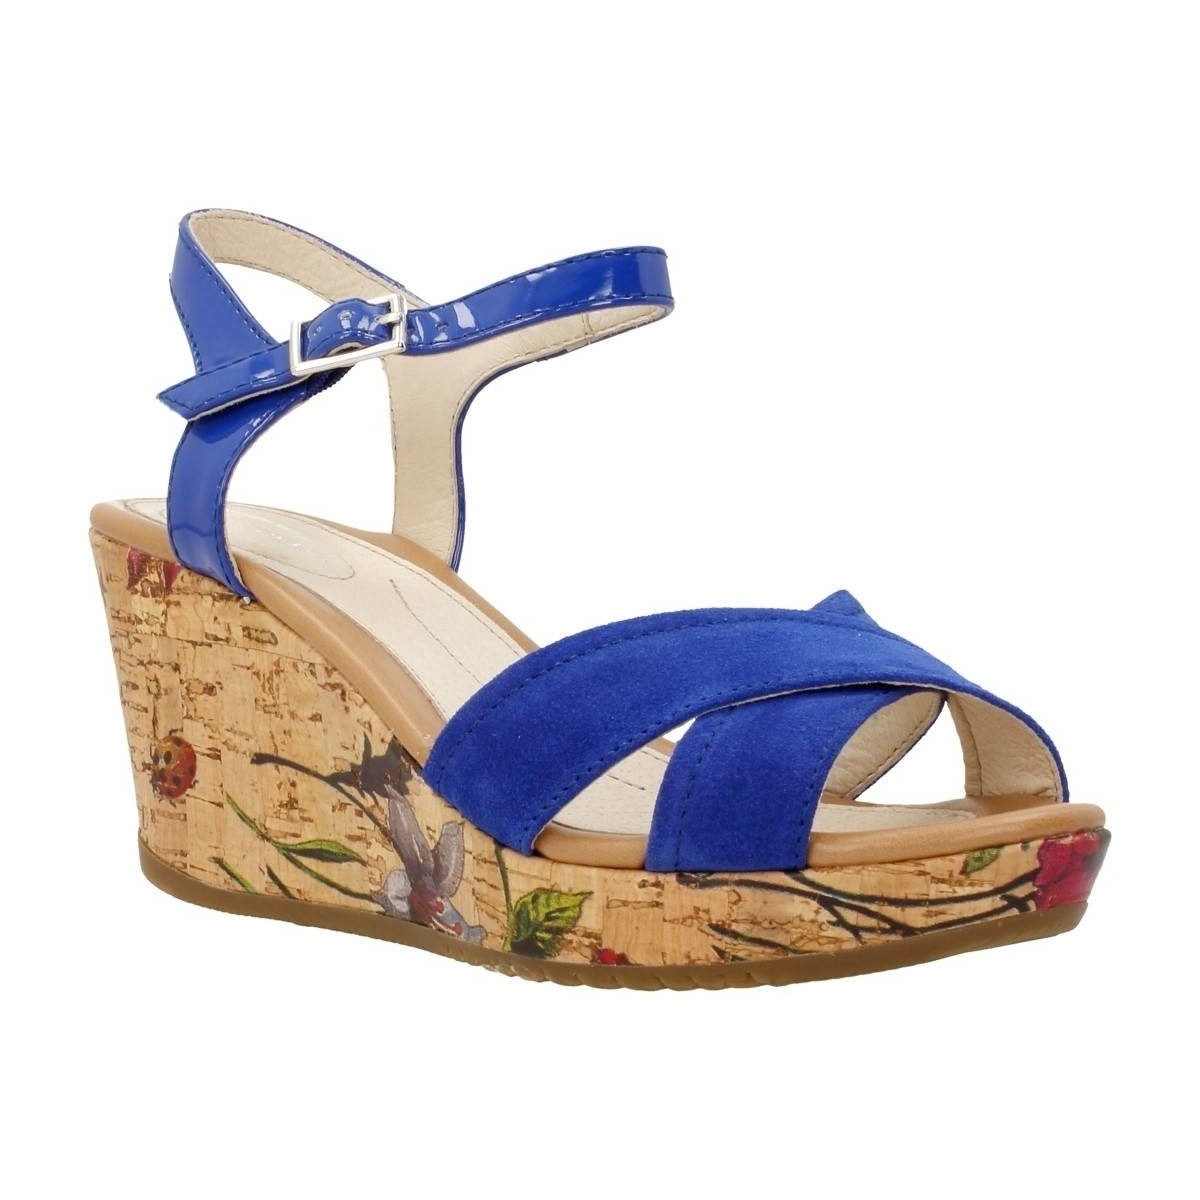 Schuhe Damen Sandalen / Sandaletten Stonefly MARLENE II 5 Blau